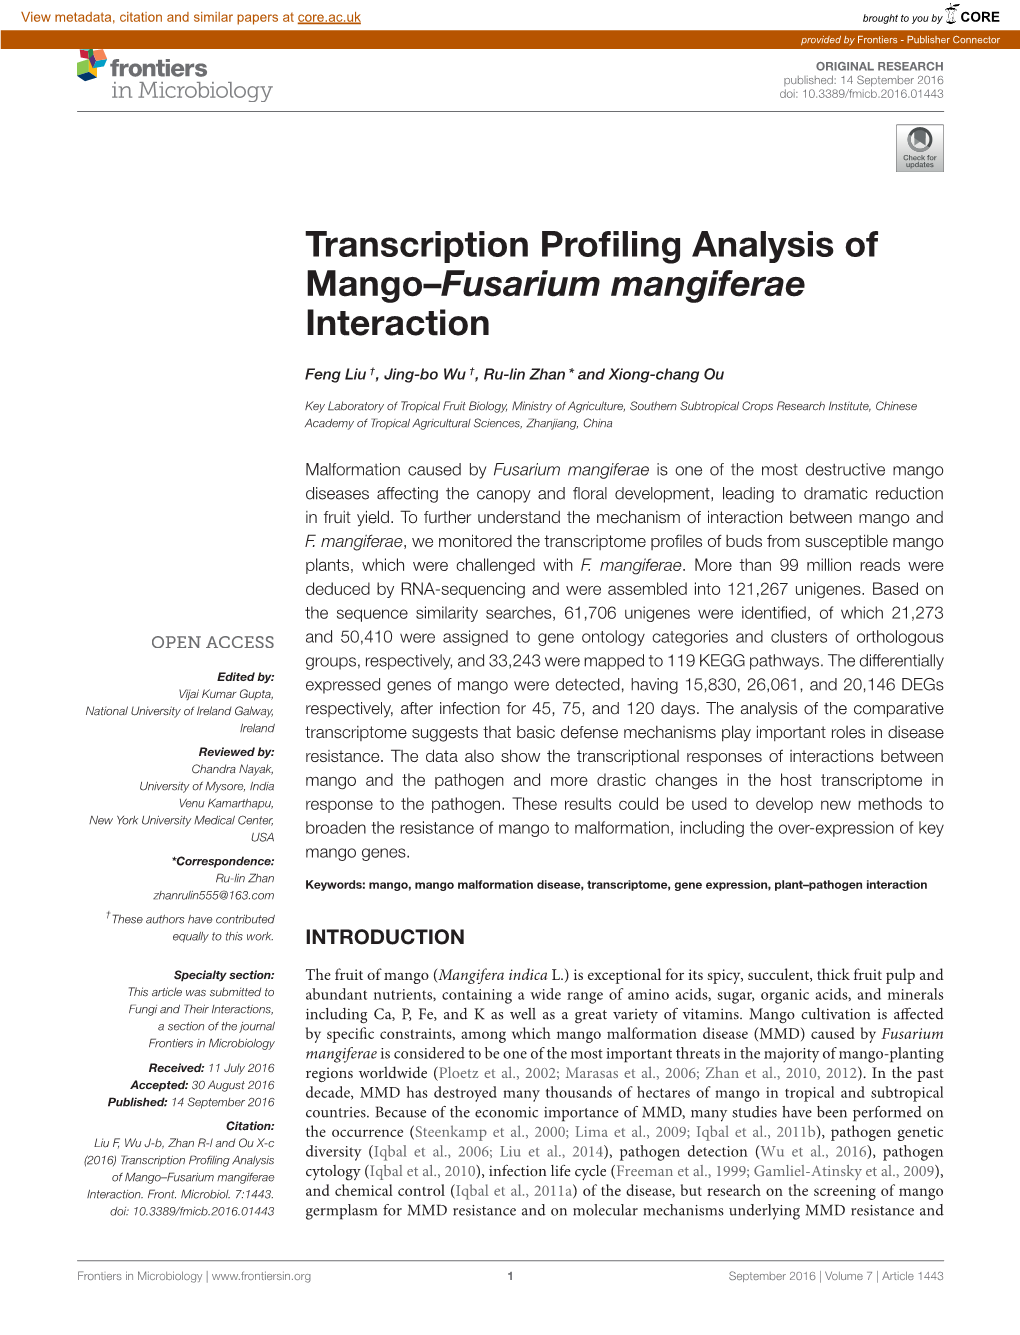 Transcription Profiling Analysis of Mango–Fusarium Mangiferae